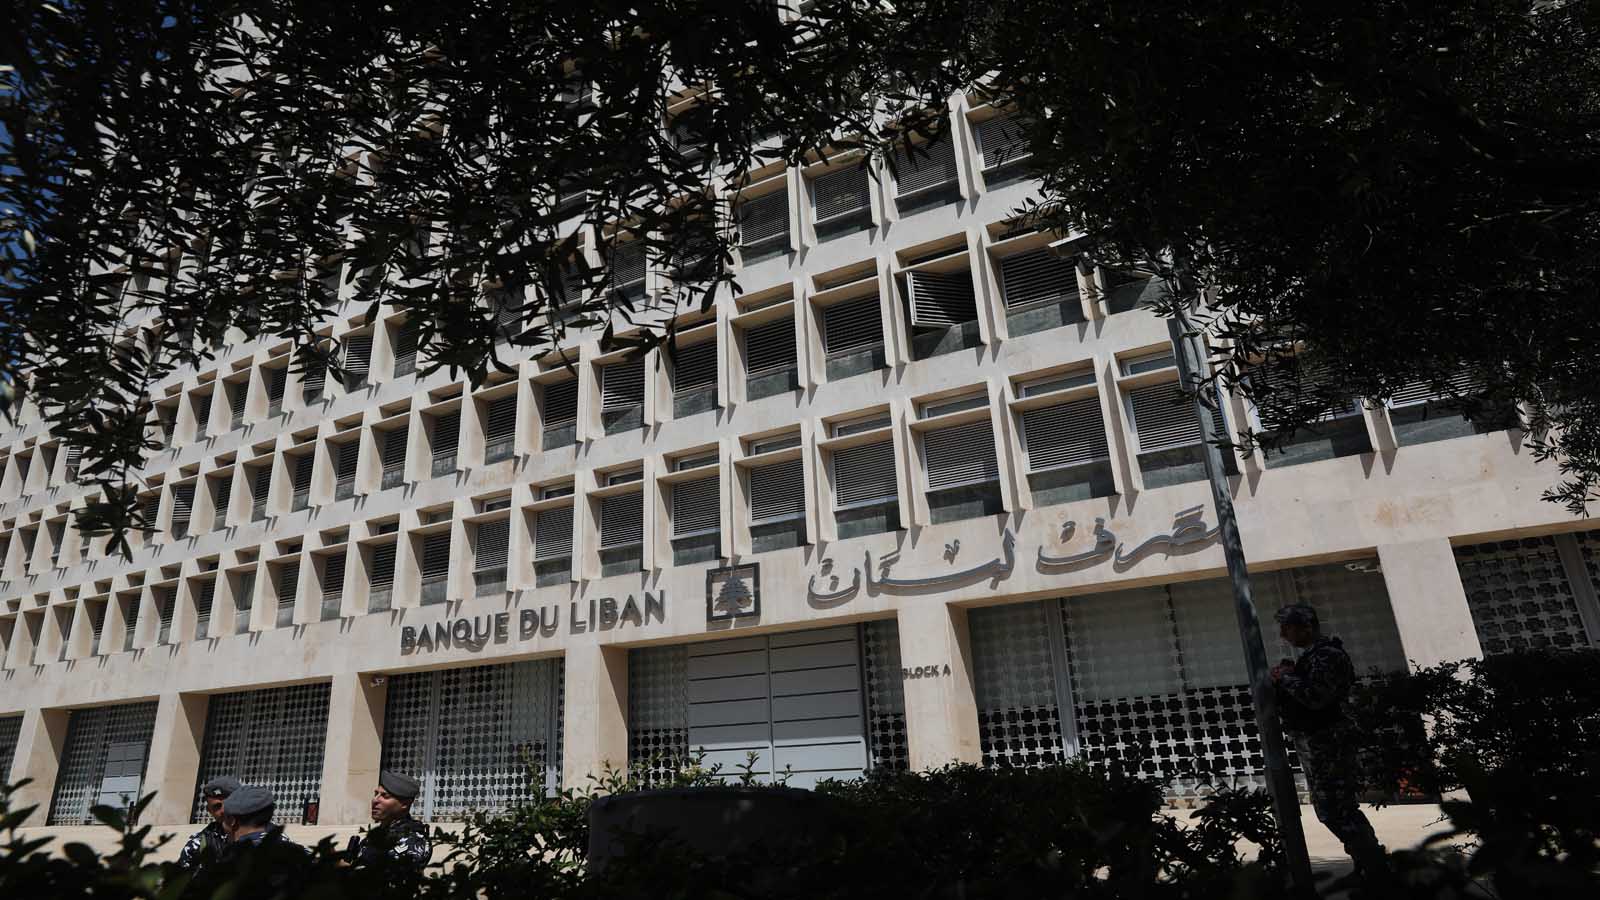 مصرف لبنان: خسائر جديدة بـ326 مليون دولار